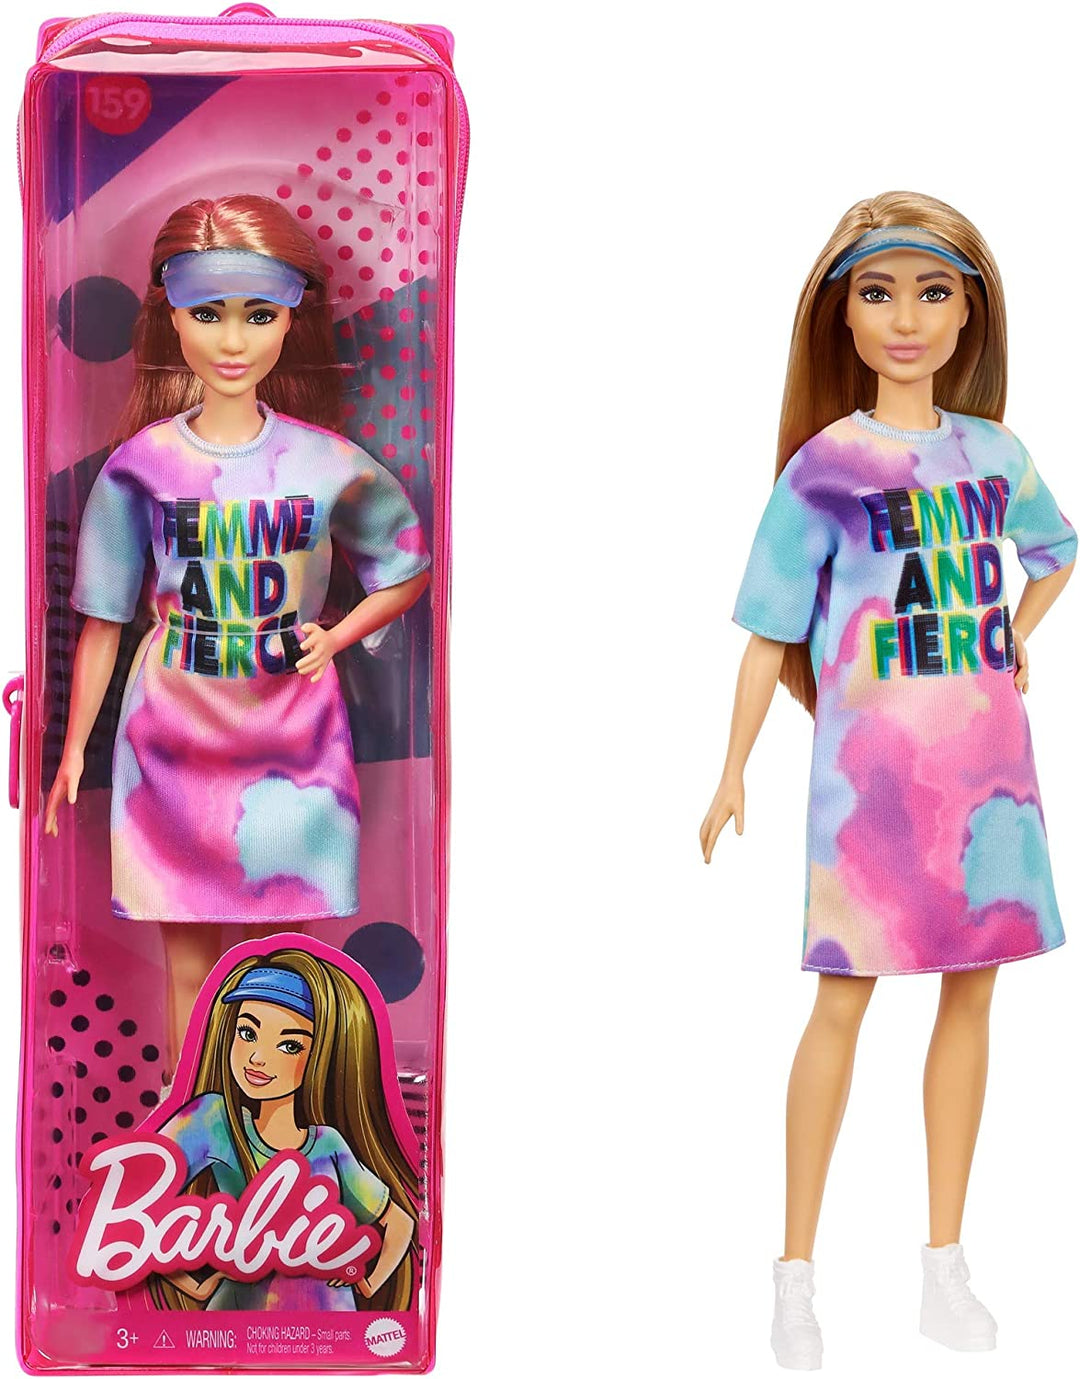 Barbie Fashionista Doll #159